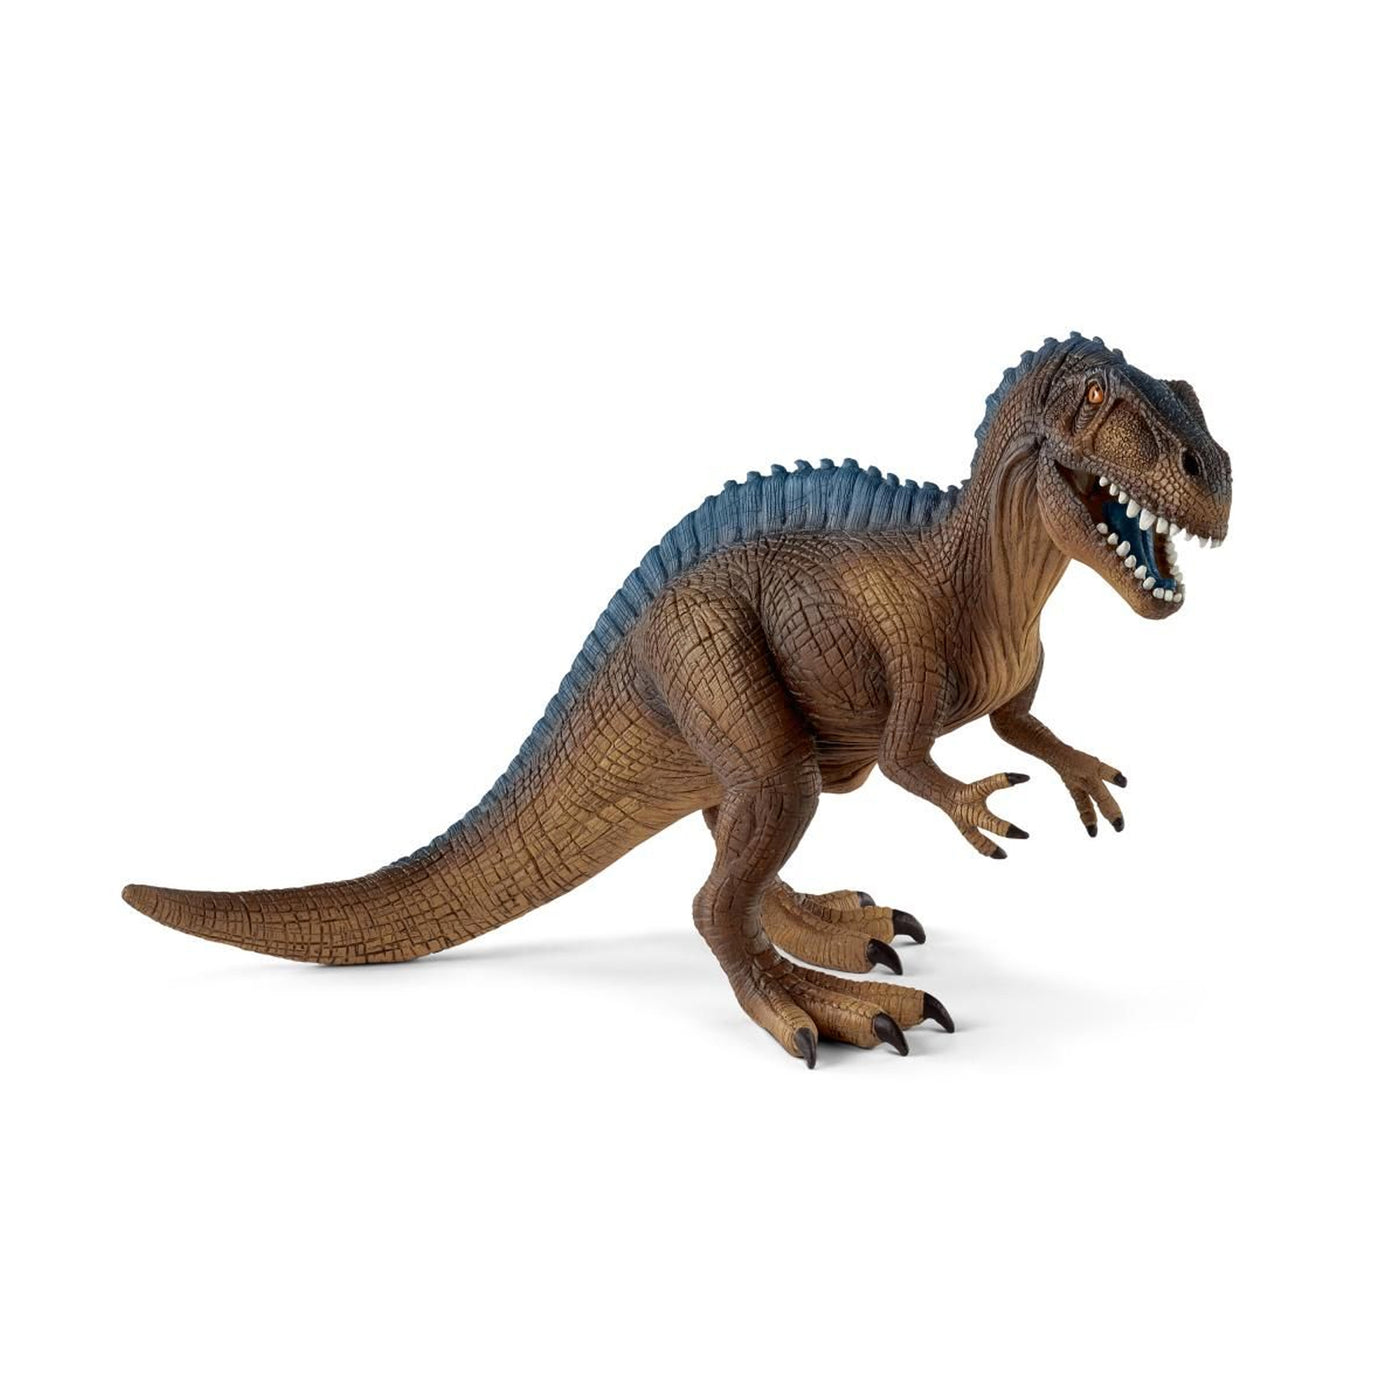 Schleich Dinosaurs Acrocanthosaurus Toy Figurine